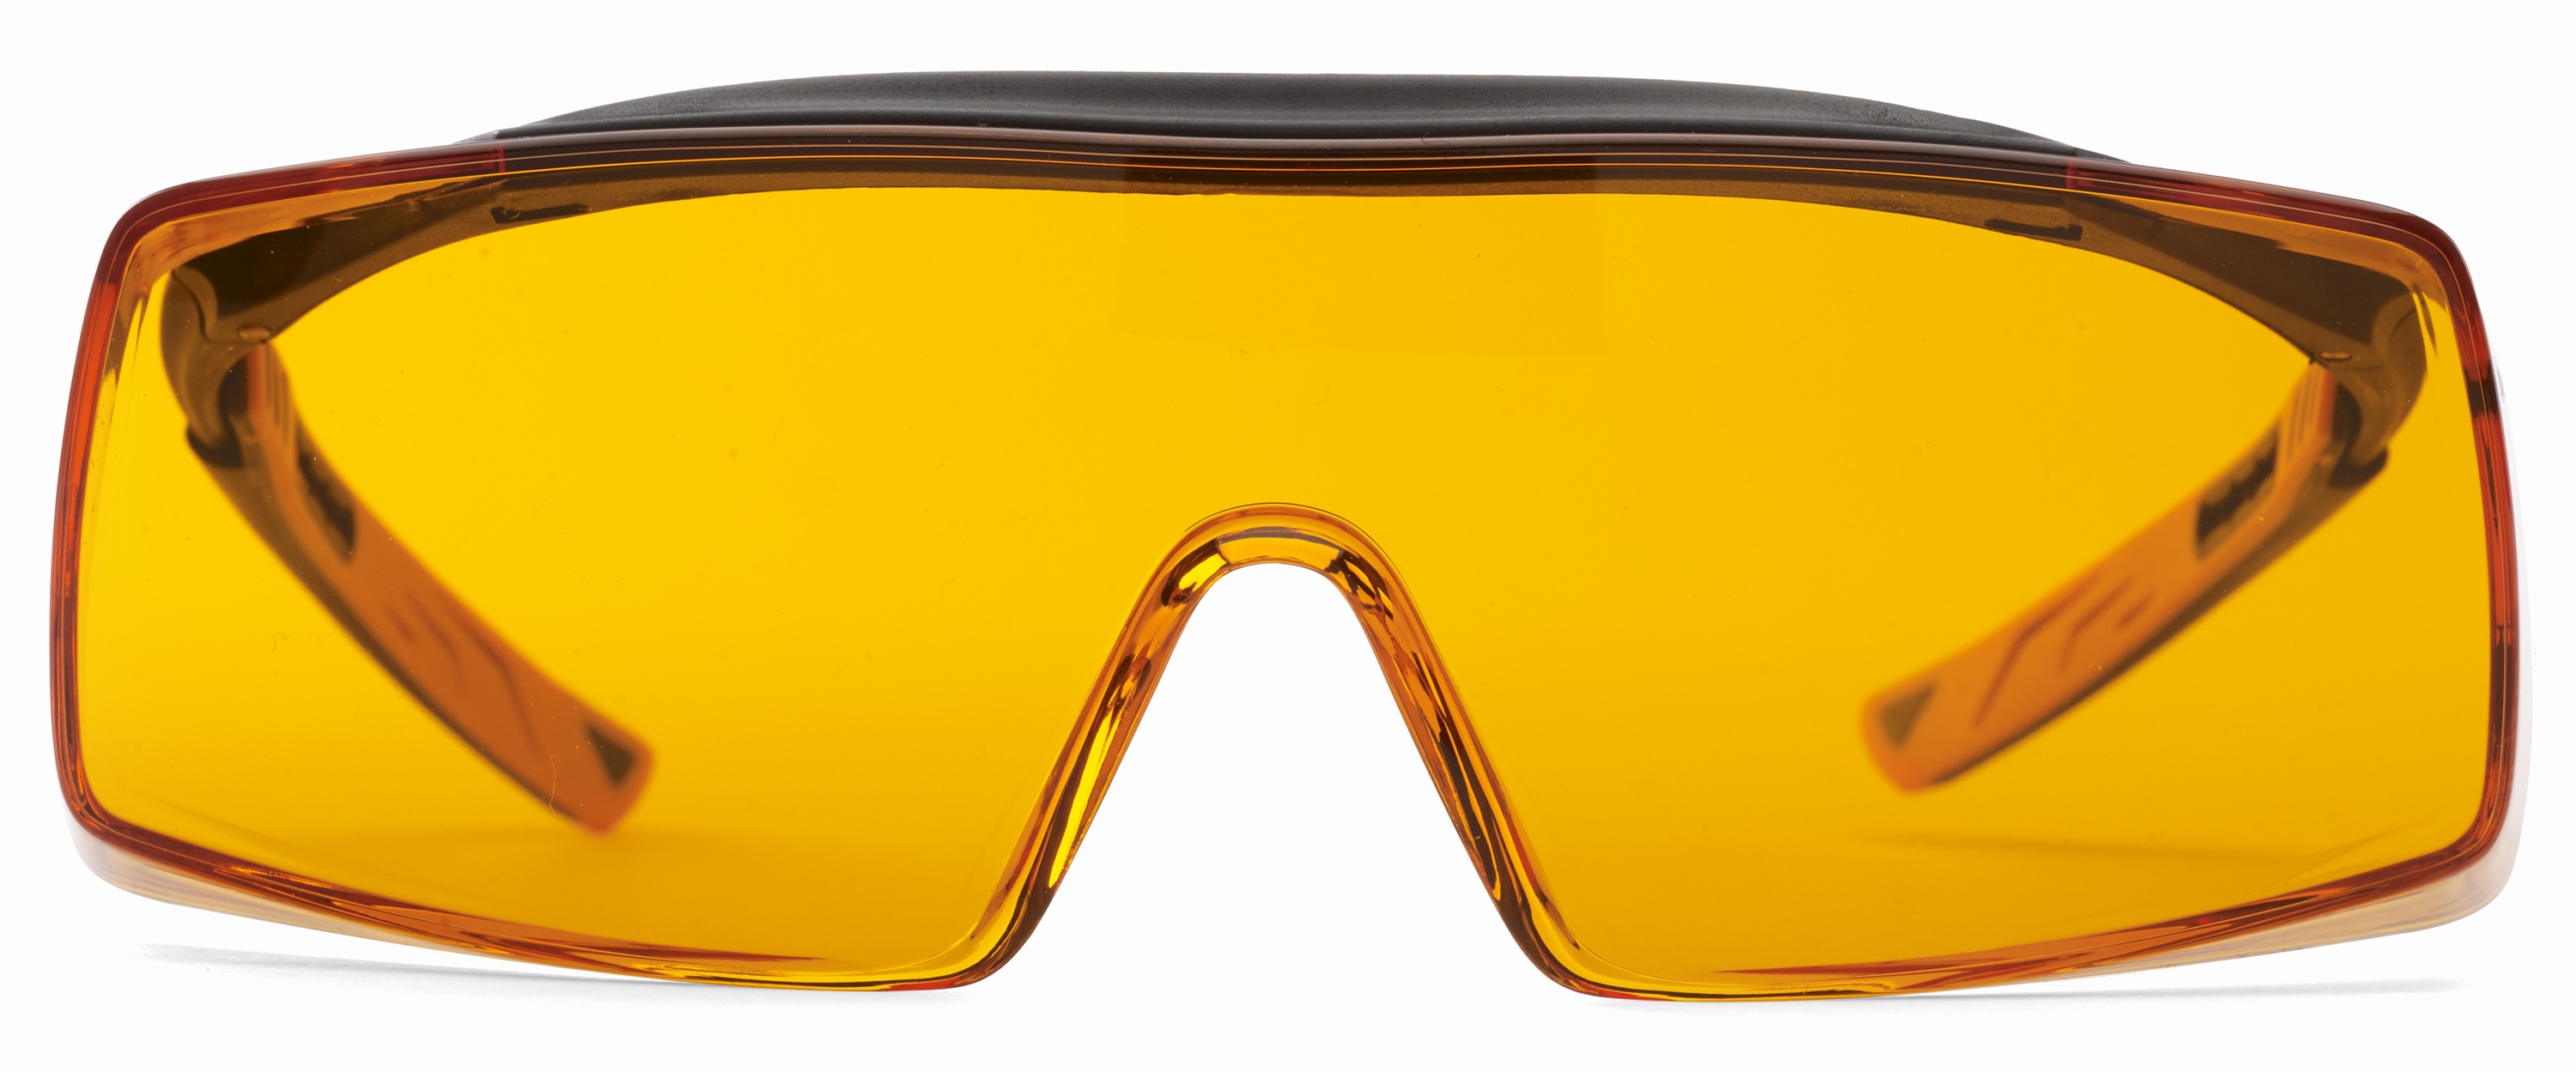 Glacubora Monoart Glasses Cube orange védőszemüveg